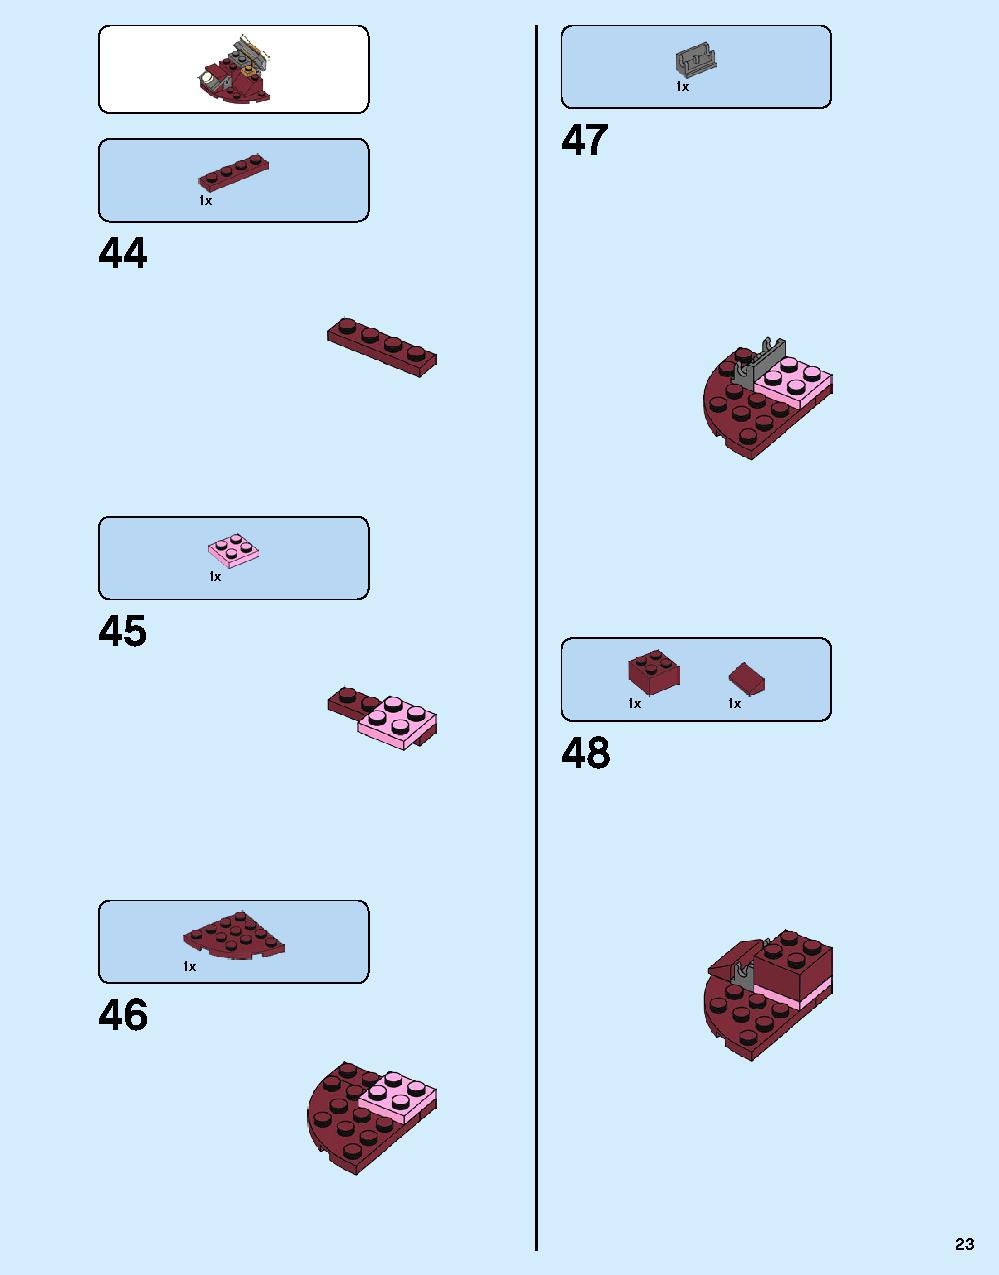 ハルクバスター：ウルトロン・エディション 76105 レゴの商品情報 レゴの説明書・組立方法 23 page